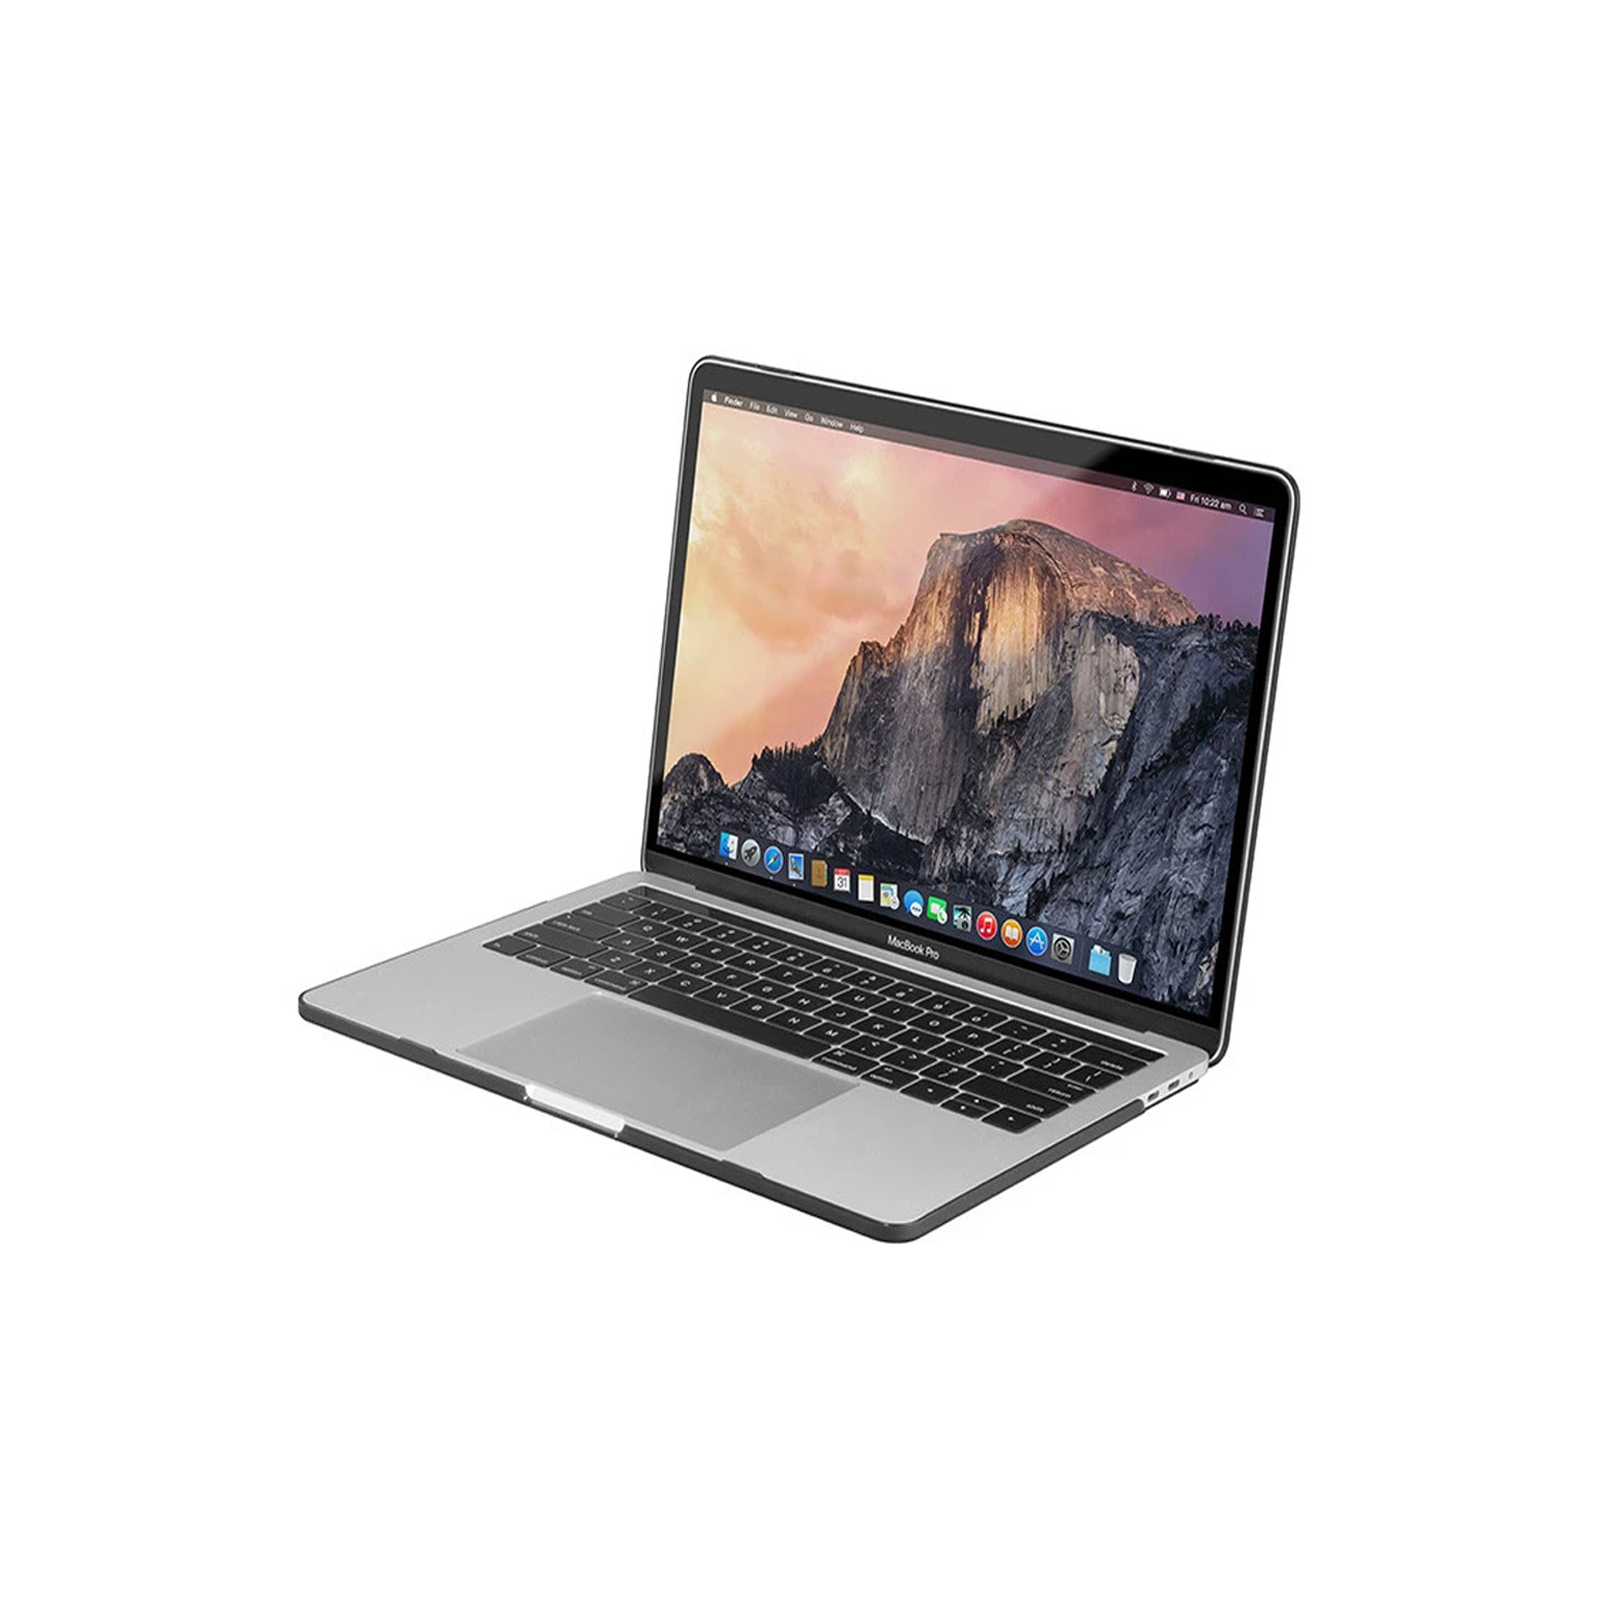 Macbook Pro 15" 2018 - Core i7 2.2Ghz / 16GB RAM / 256GB SSD / 555X 4GB